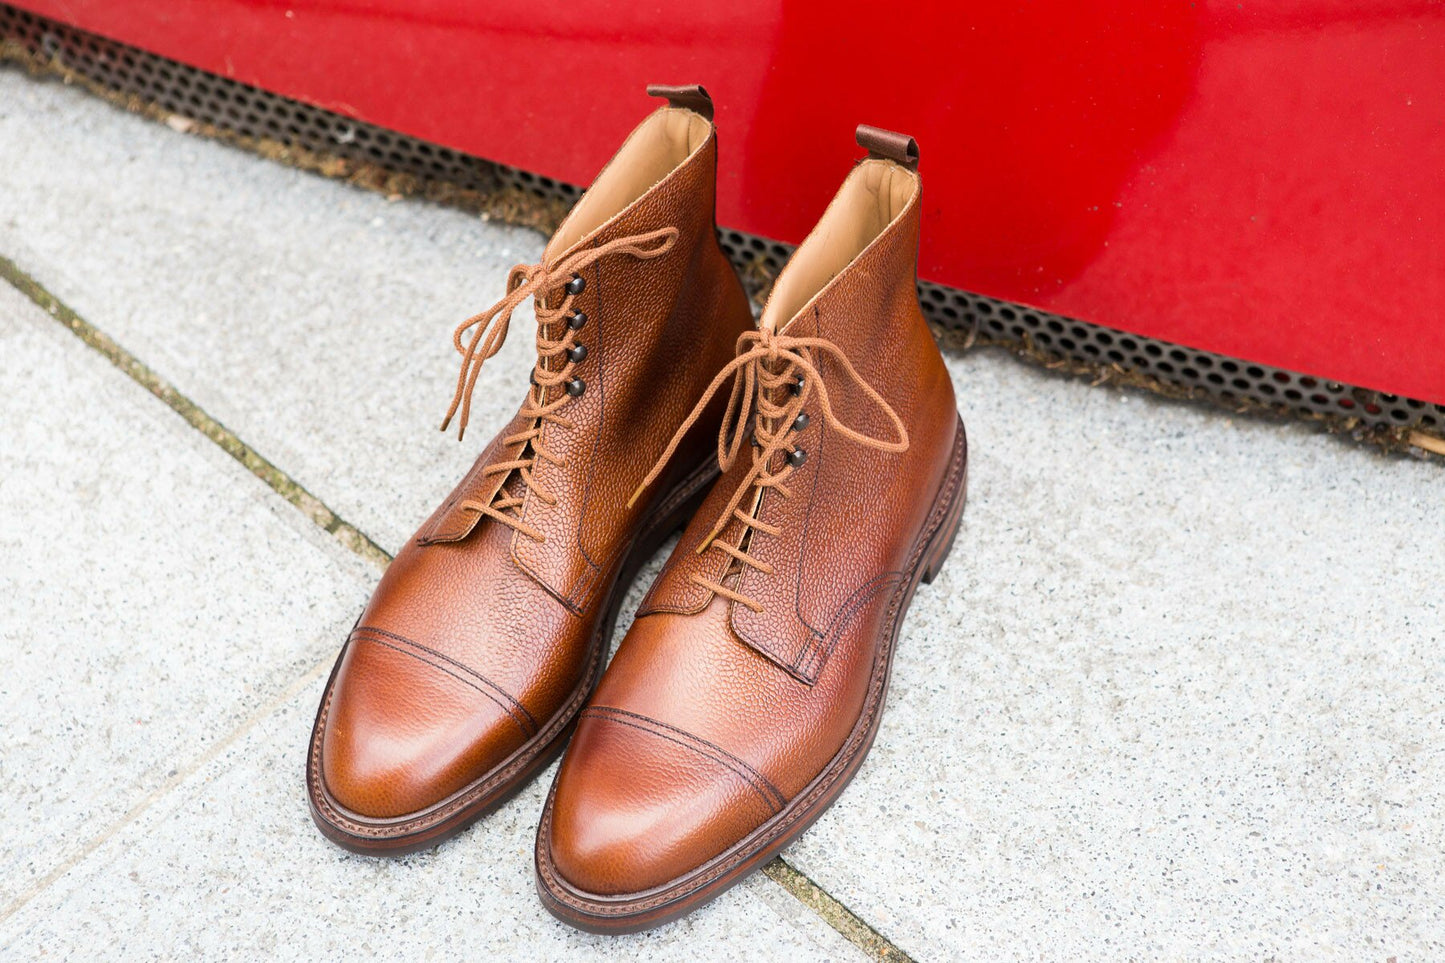 Crockett & Jones - Coniston Boots Iconique Coniston tan scotch grain semelle cousue goodyear